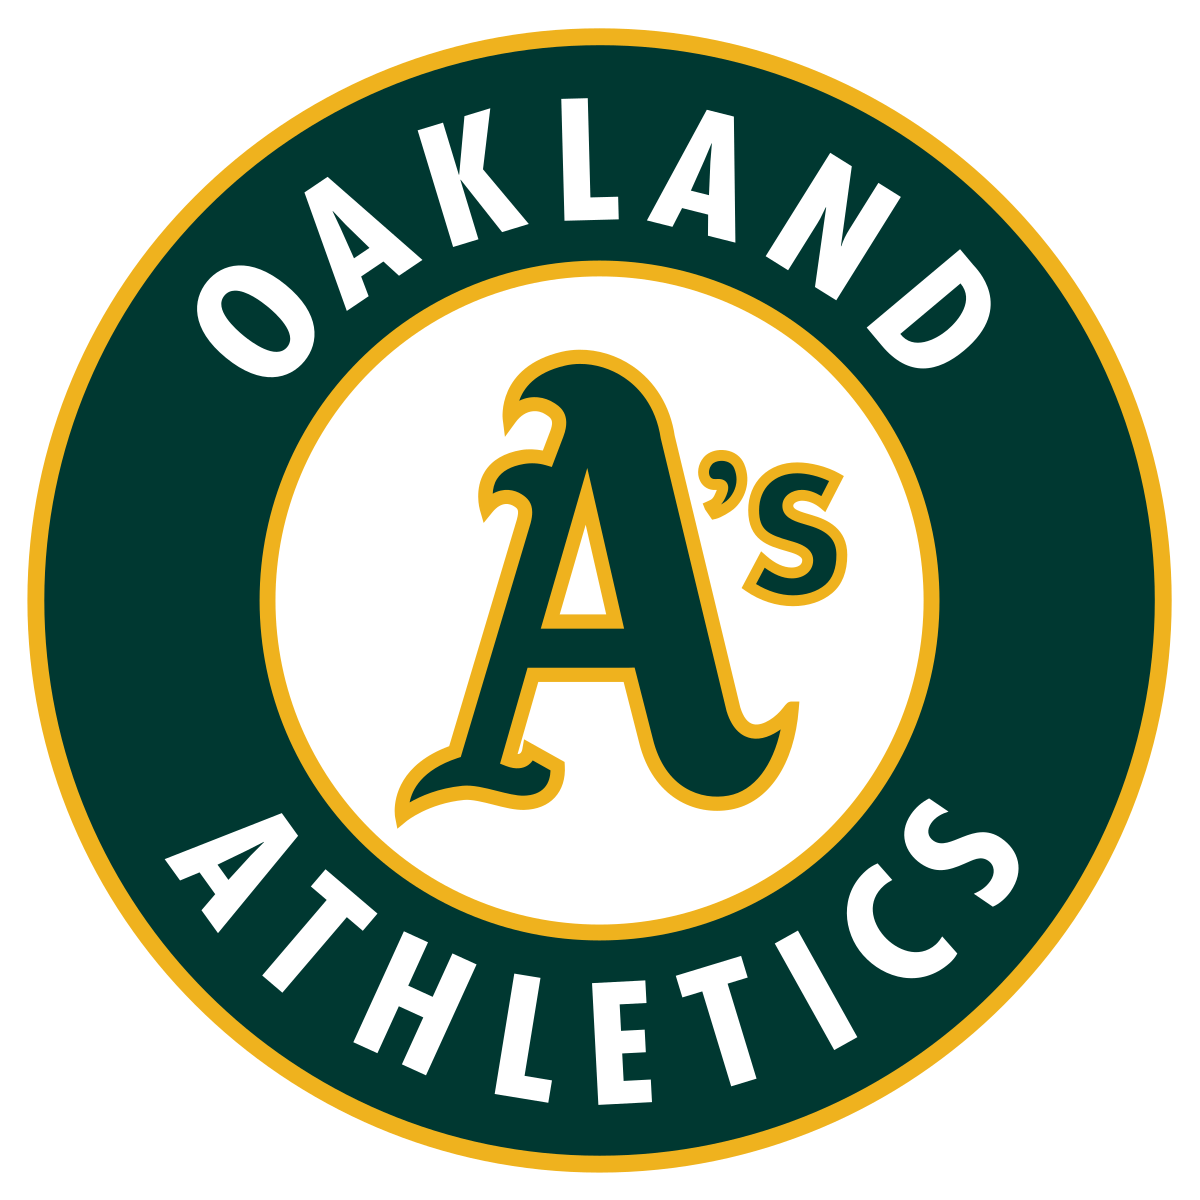 United States Supreme Court Logo - Oakland Athletics